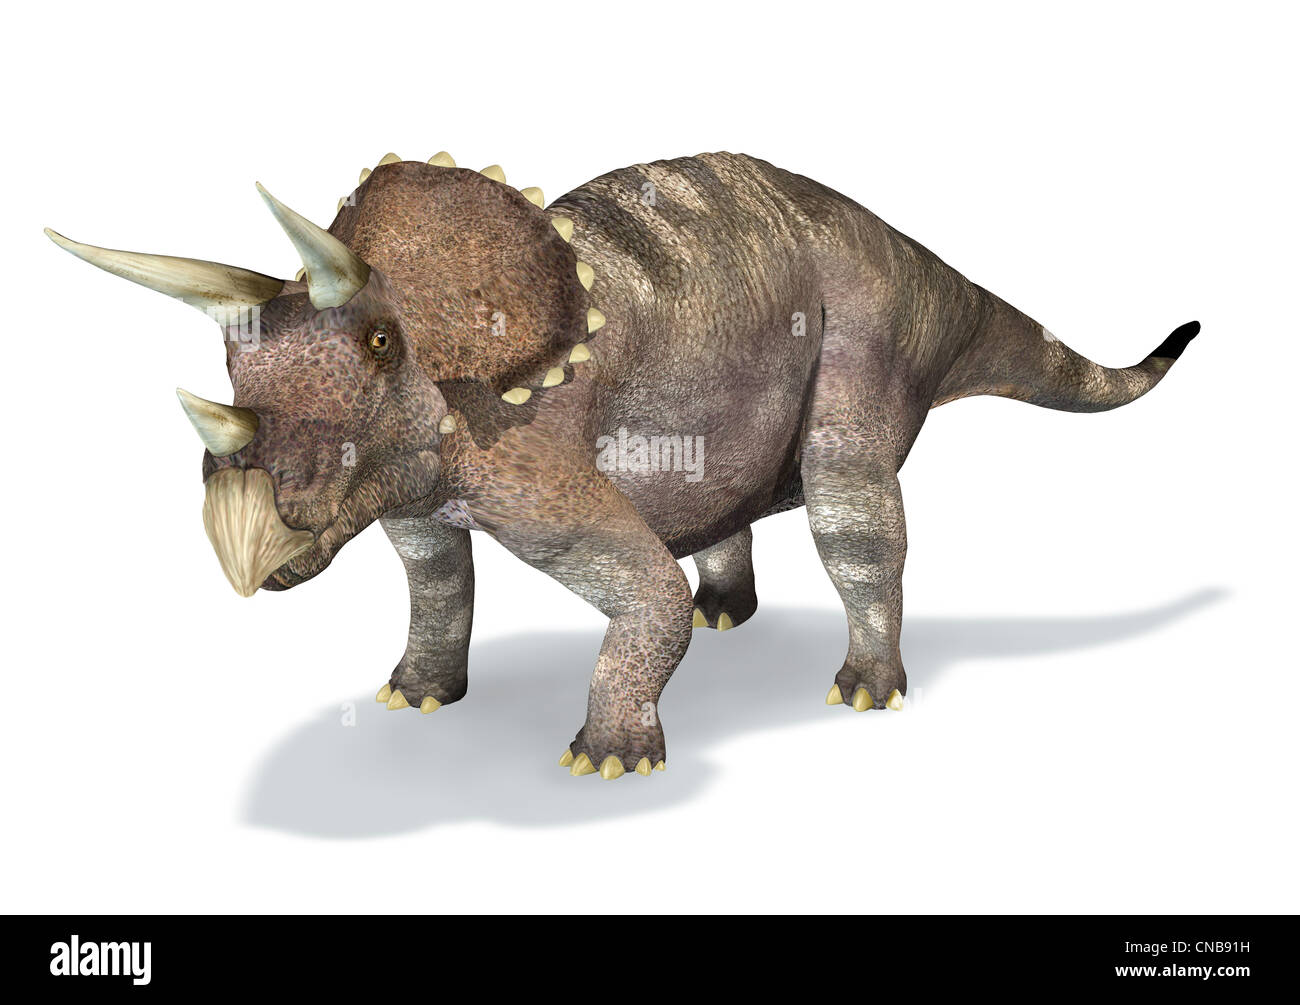 Fotorealistische 3-D-Rendering von ein Triceratops. Auf weißem Hintergrund mit Schlagschatten und Clipping-Pfad enthalten. Stockfoto